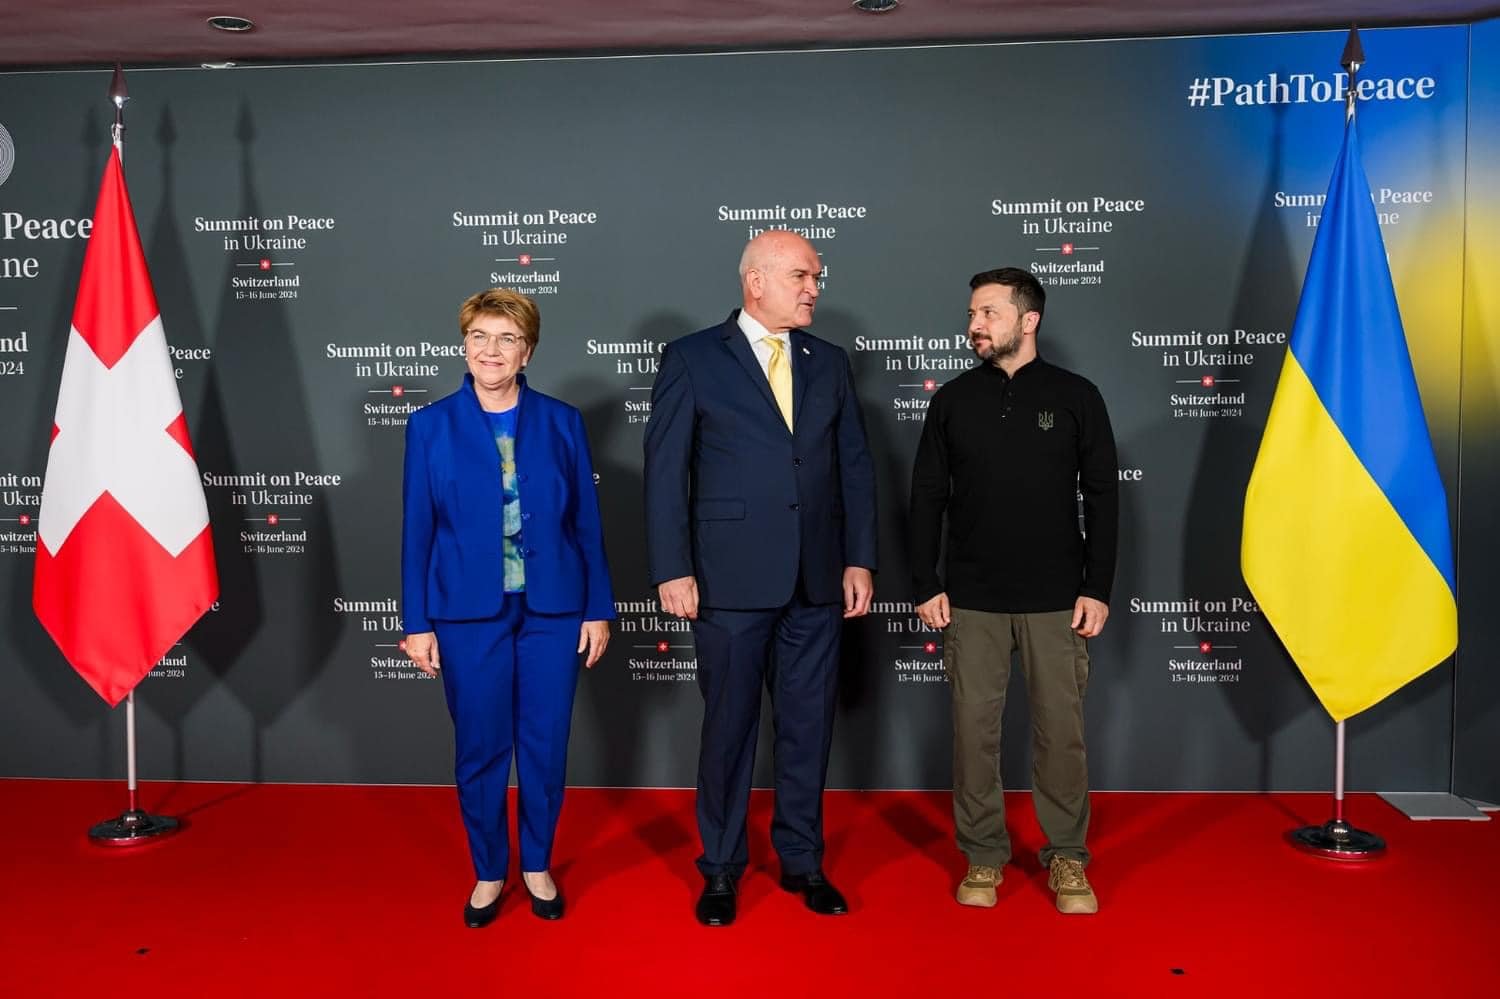 Димитър Главчев на конференцията - до него вдясно е президентът Зеленски, а вляво домакинът - президентката на Швейцария Виола Амхерд